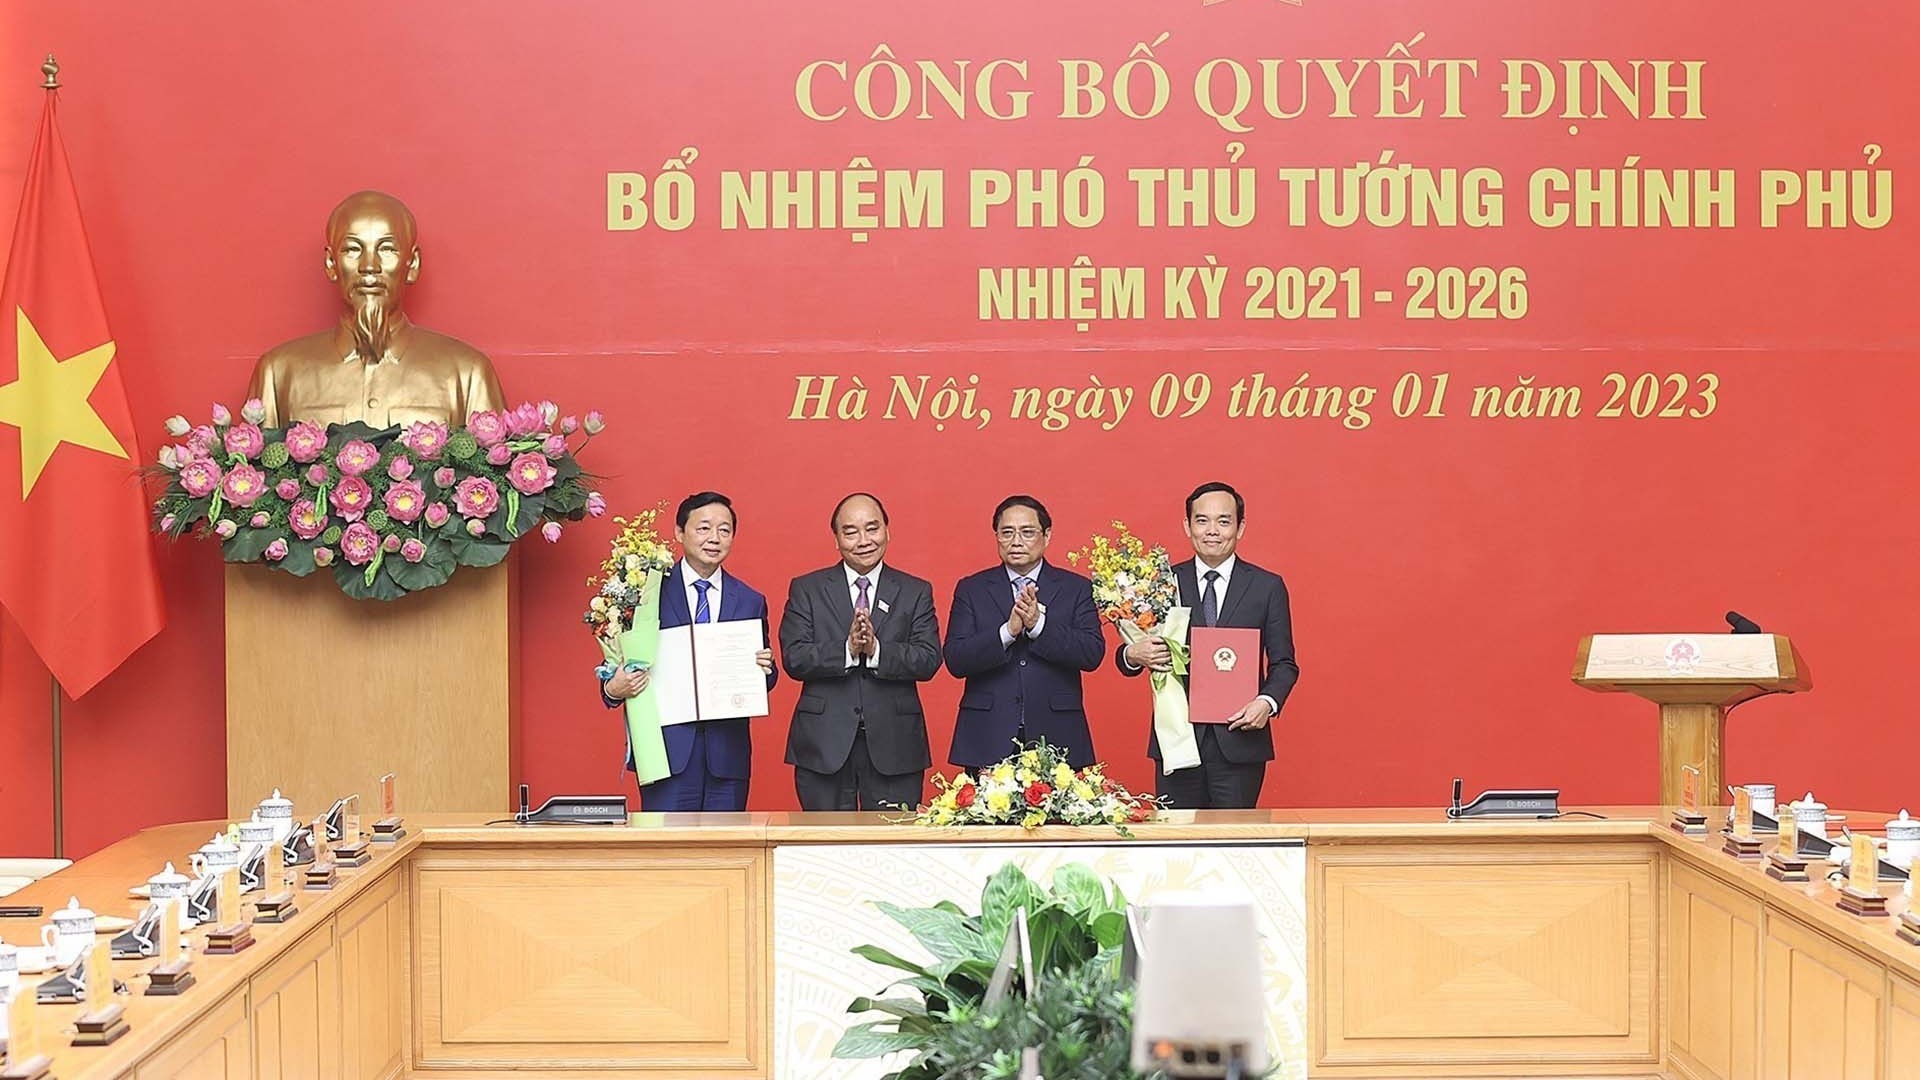 Trao quyết định bổ nhiệm hai tân Phó Thủ tướng Chính phủ